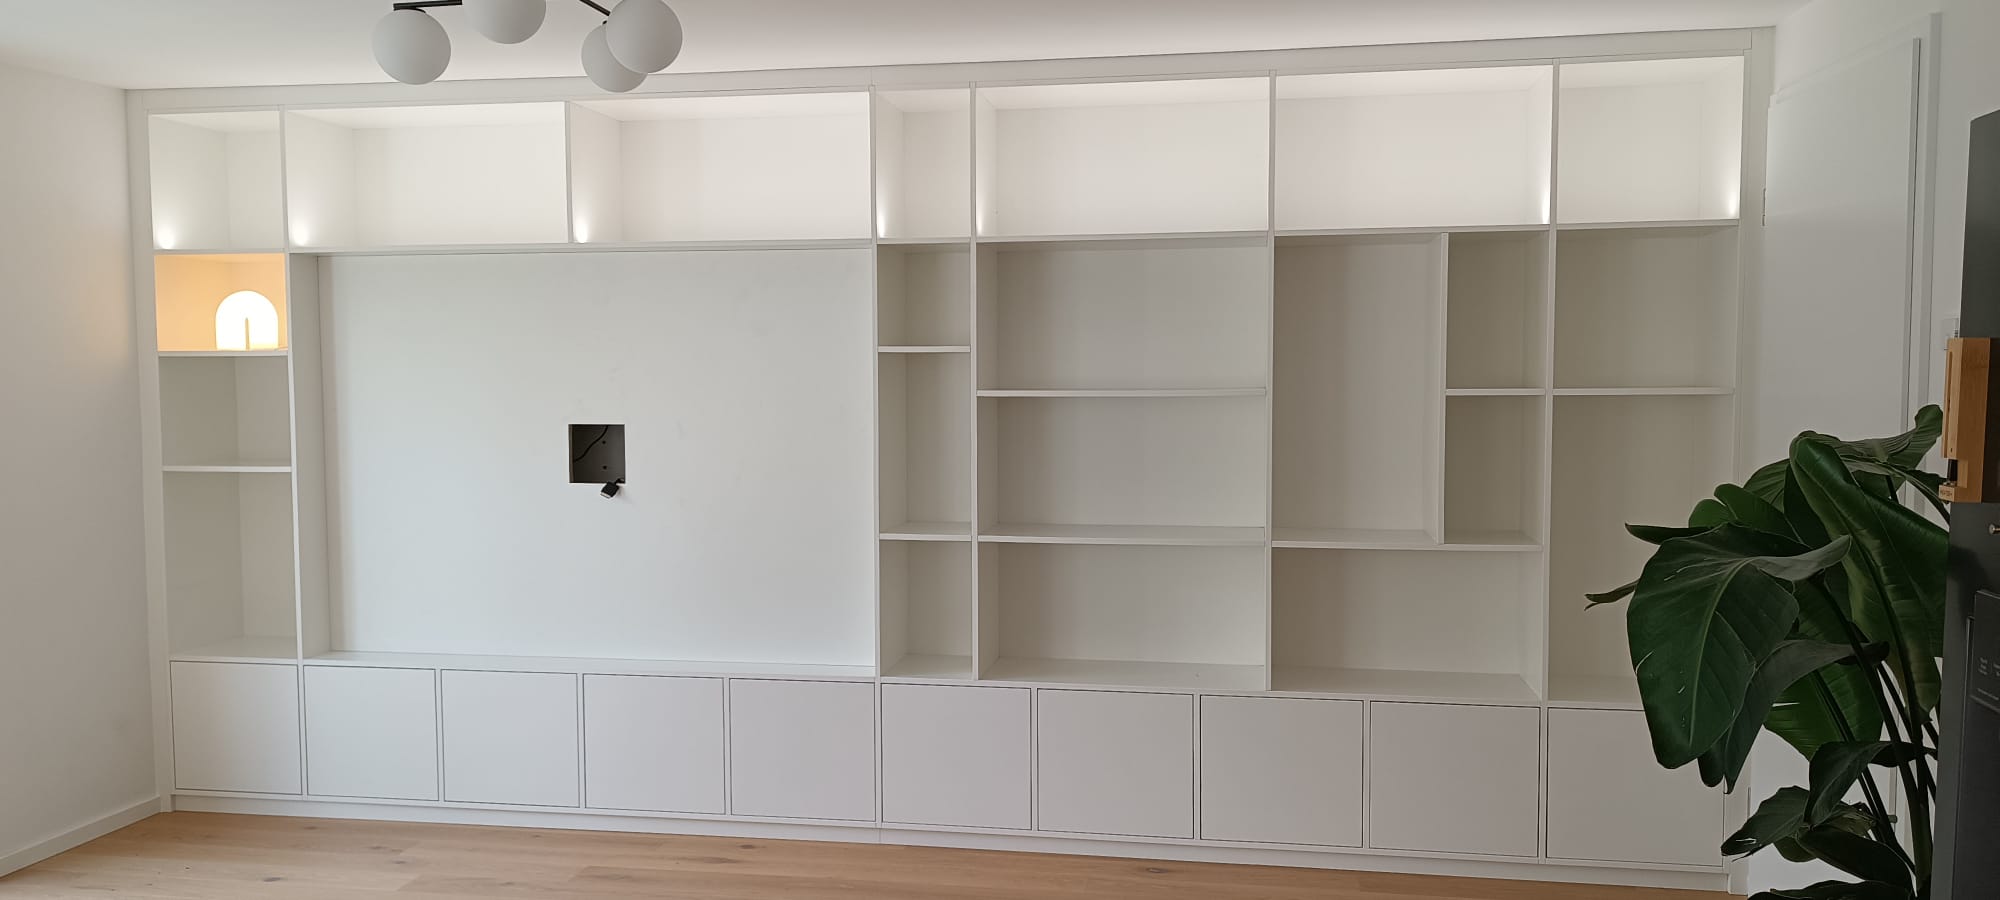 Wohnwand mit Türen, offenen Regalen und Platz für den Fernseher: Beispiel für einen Einbauschrank im Wohnzimmer.